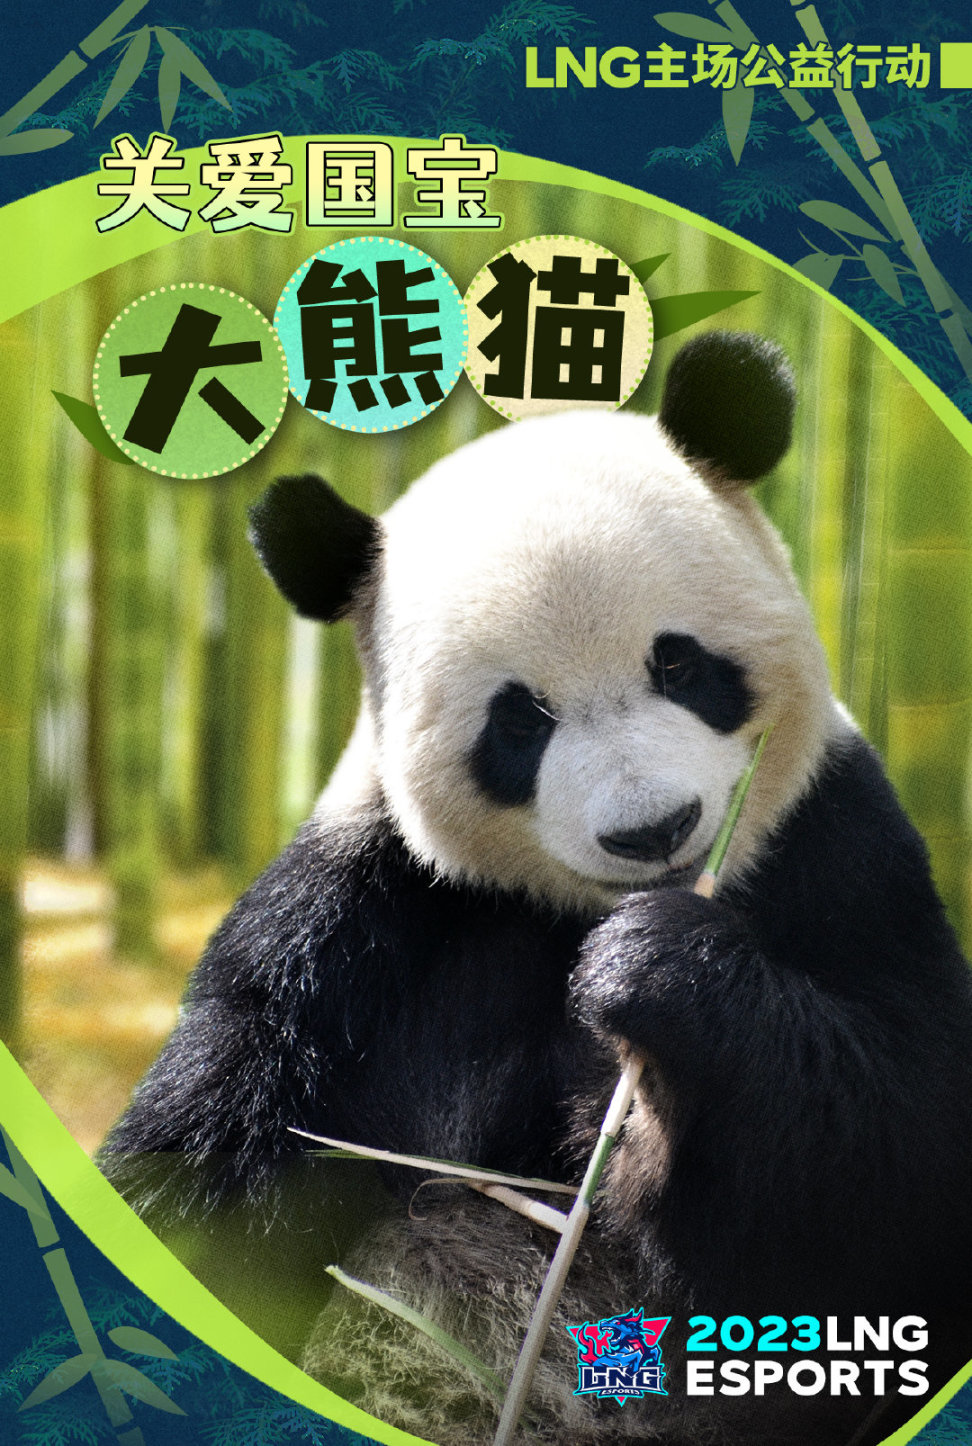 【英雄联盟】联盟日报:明日LNG门票收益捐赠大熊猫中心;UP无缘季后赛-第4张